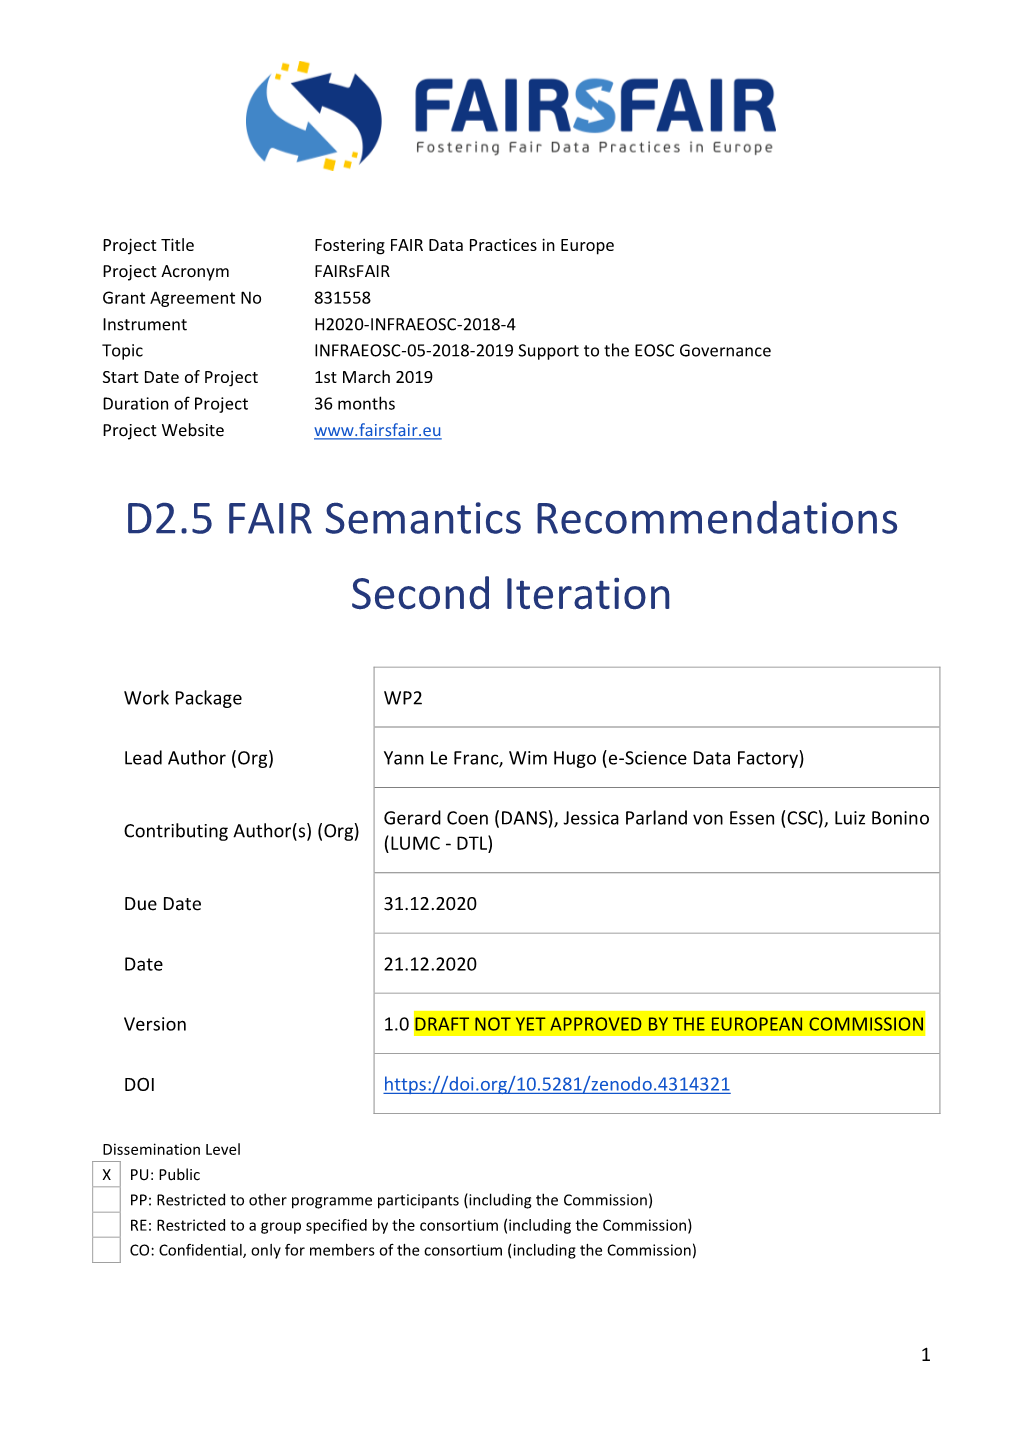 D2.5 FAIR Semantics Recommendations Second Iteration